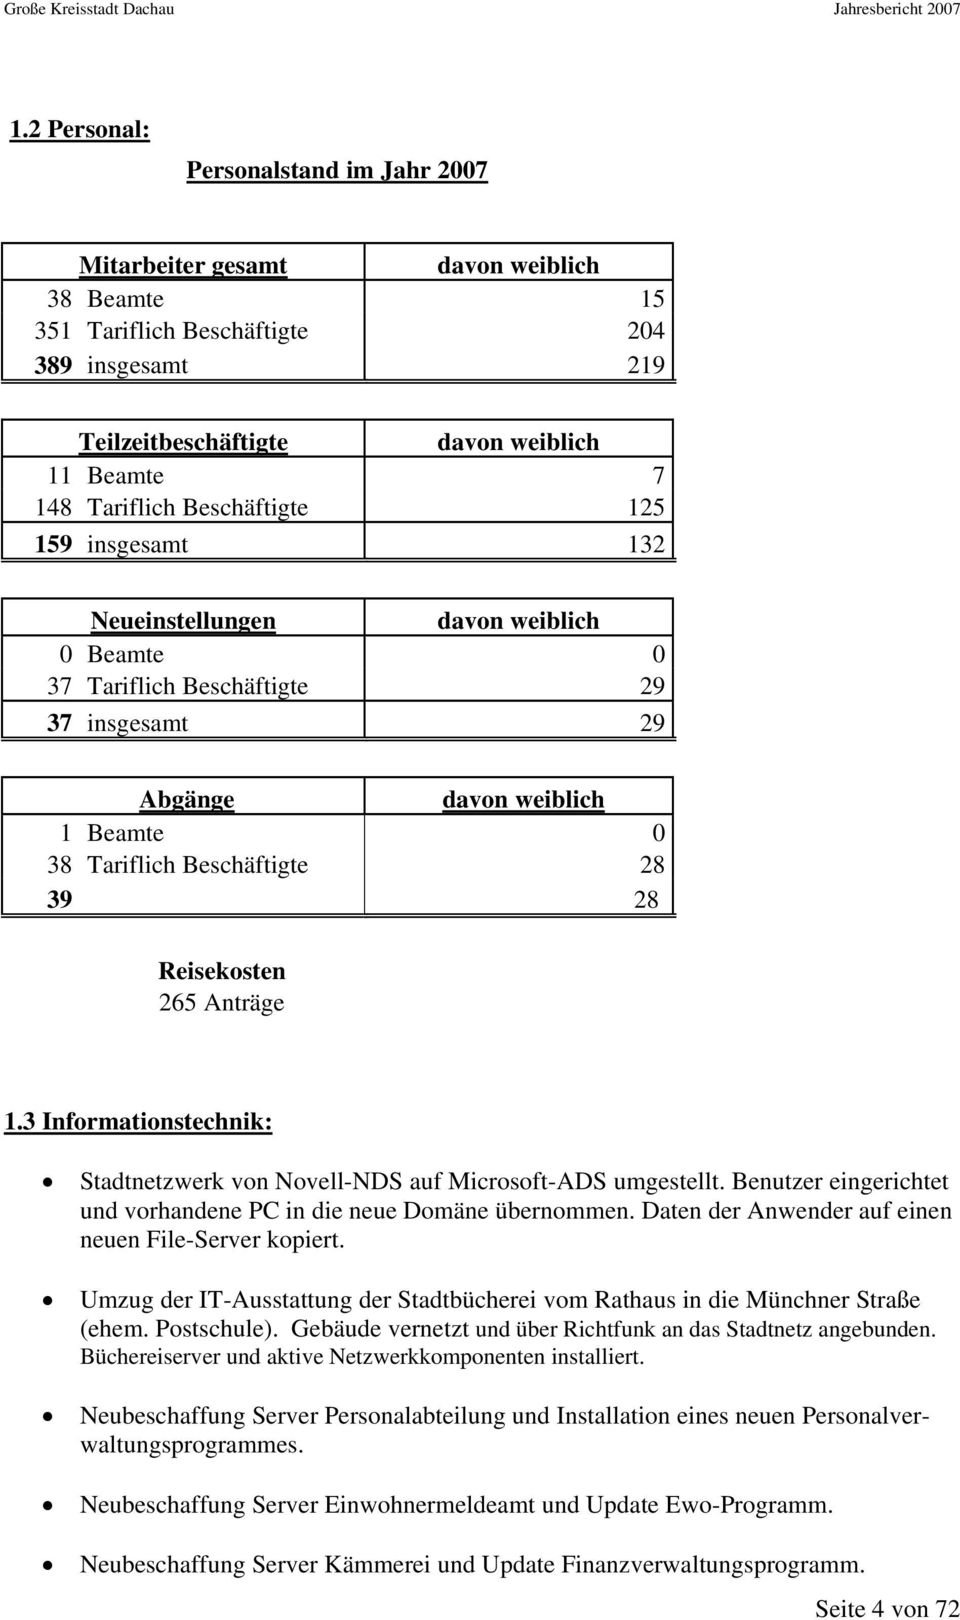 Reisekosten 265 Anträge 1.3 Informationstechnik: Stadtnetzwerk von Novell-NDS auf Microsoft-ADS umgestellt. Benutzer eingerichtet und vorhandene PC in die neue Domäne übernommen.